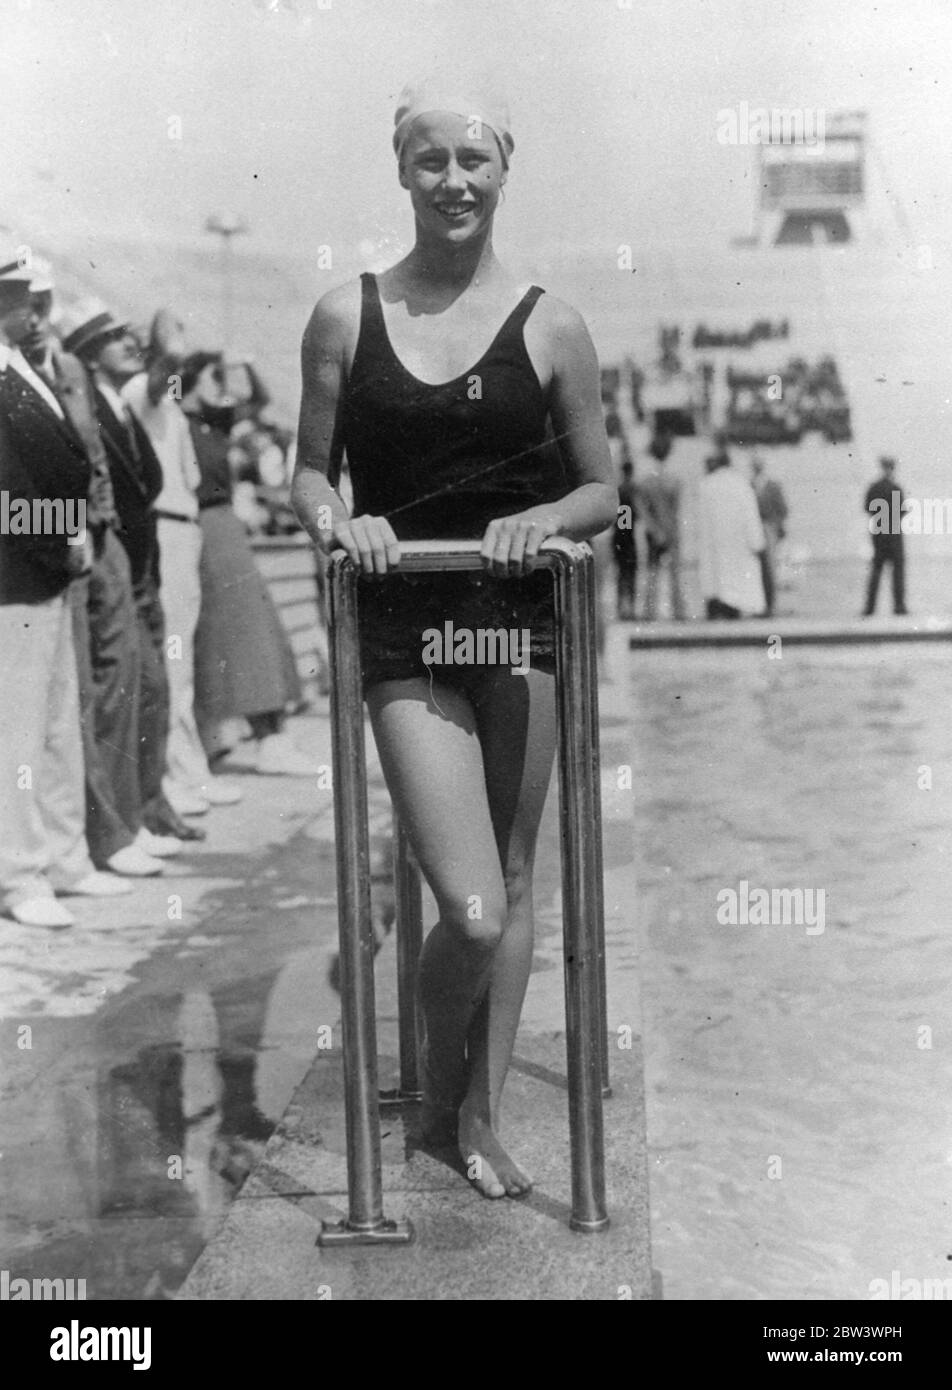 Le plus jeune membre de l équipe olympique de plongée de l Amérique . Treize - année - Marjorie Gestring de Los Angeles , le plus jeune membre de l'équipe de plongée de l'Amérique pour les Jeux Olympiques de 1936 , met en pratique avec d'autres membres à Berlin avant l'ouverture des Jeux de la semaine prochaine . Dans l'épreuve olympique - dehors tenu à New York , Majorie a terminé deuxième , seulement un - dixième d'un point derrière le gagnant . Photos : Margorie Gchaîne souriante venant de la piscine du stade après une plongée pratique . 31 juillet 1936 Banque D'Images